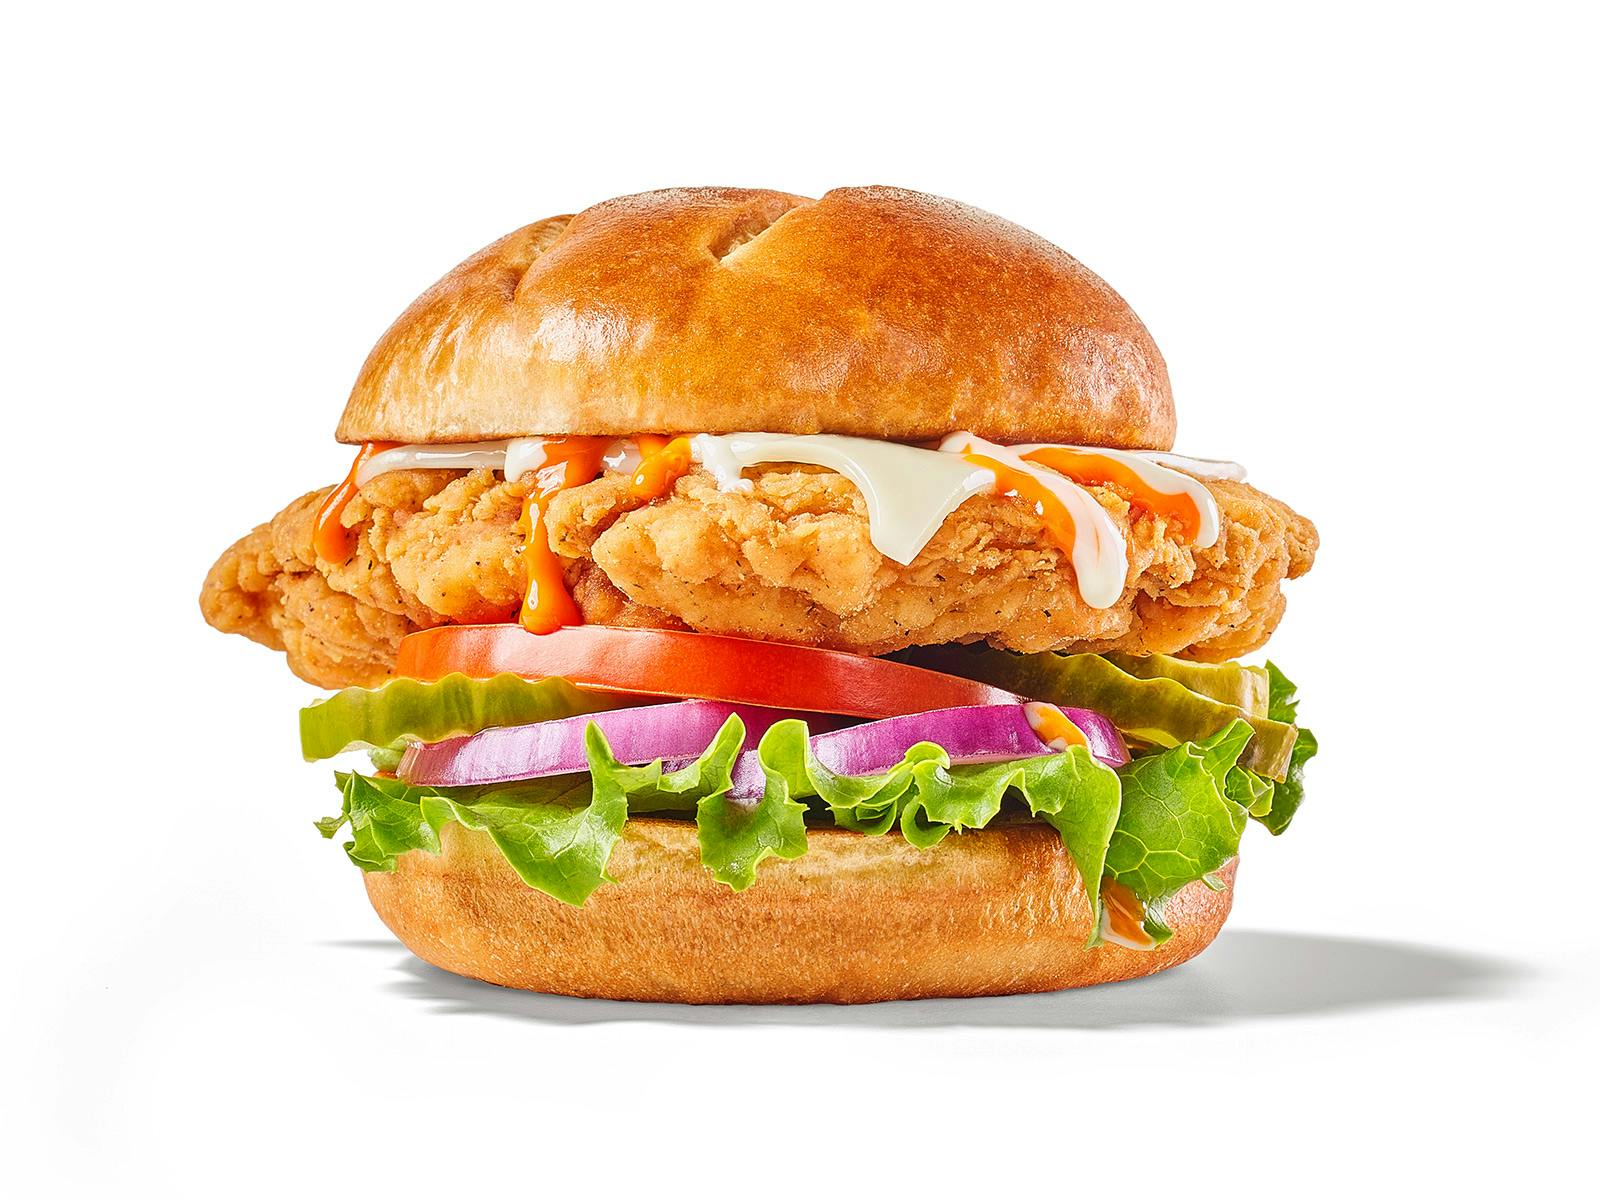 Buffalo Ranch Chicken Sandwich from Buffalo Wild Wings (684) - Bellevue in Bellevue, WI